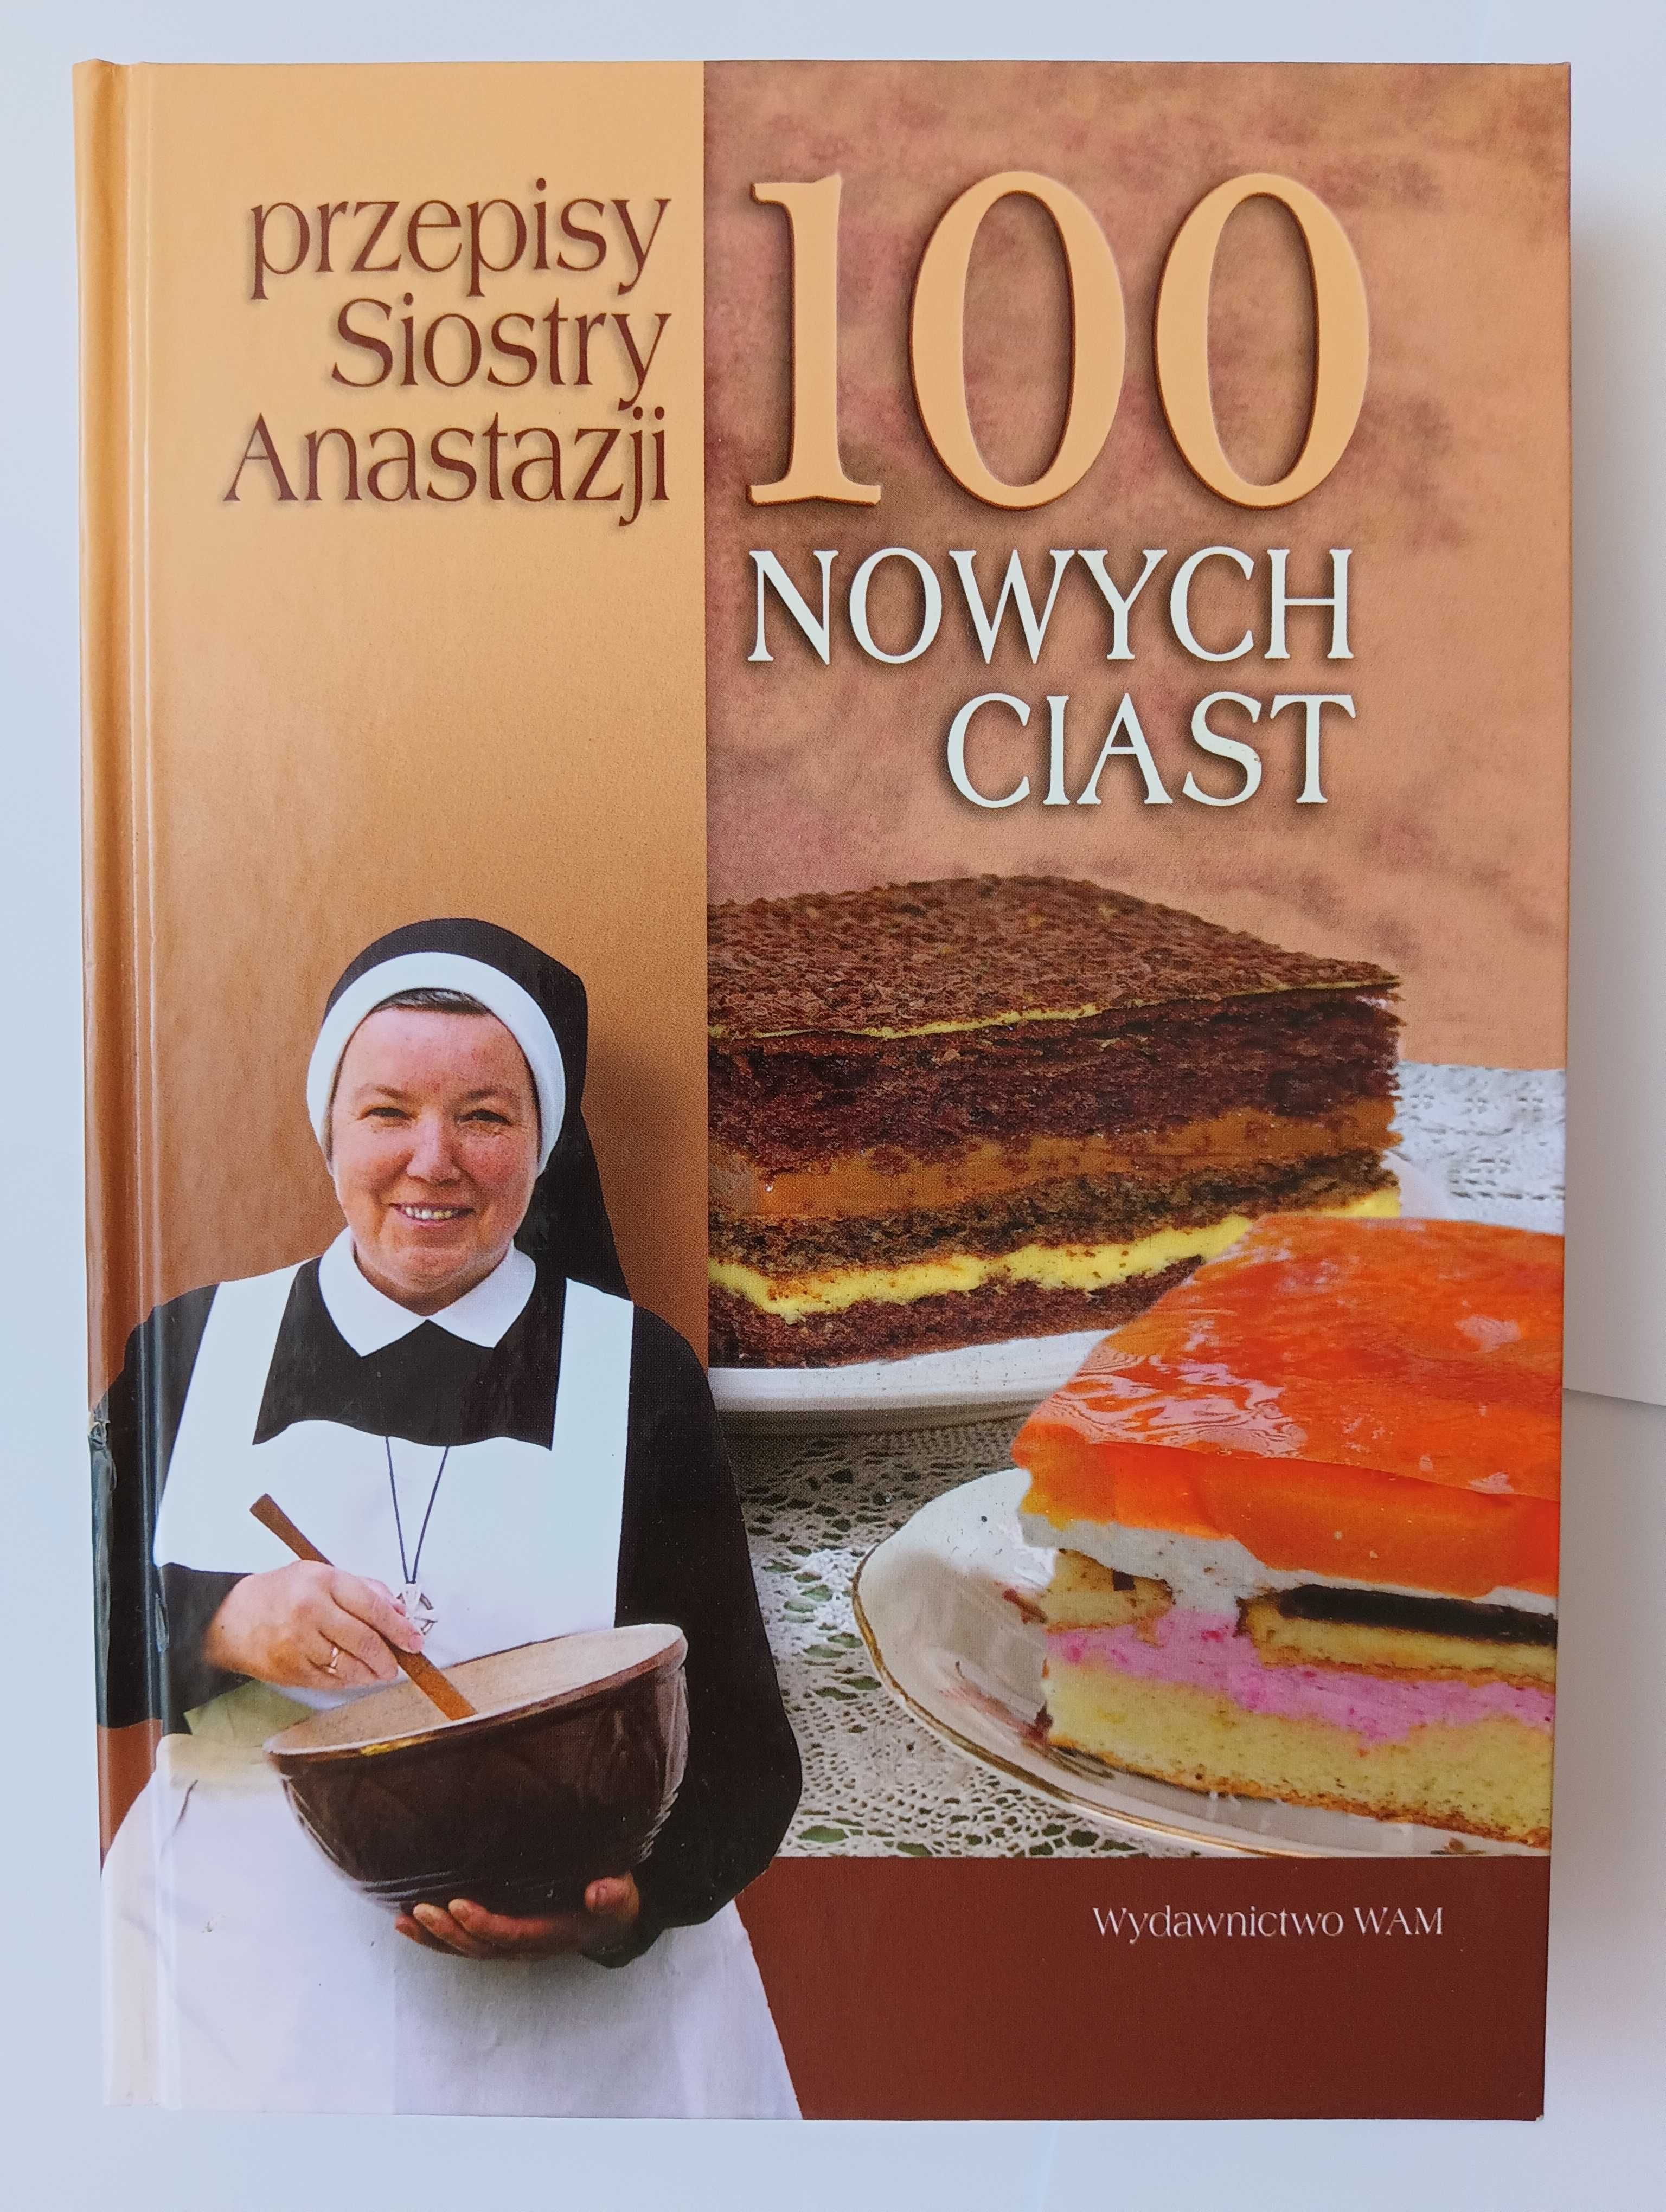 100 NOWYCH CIAST SIOSTRY ANASTAZJI / książka kulinarna